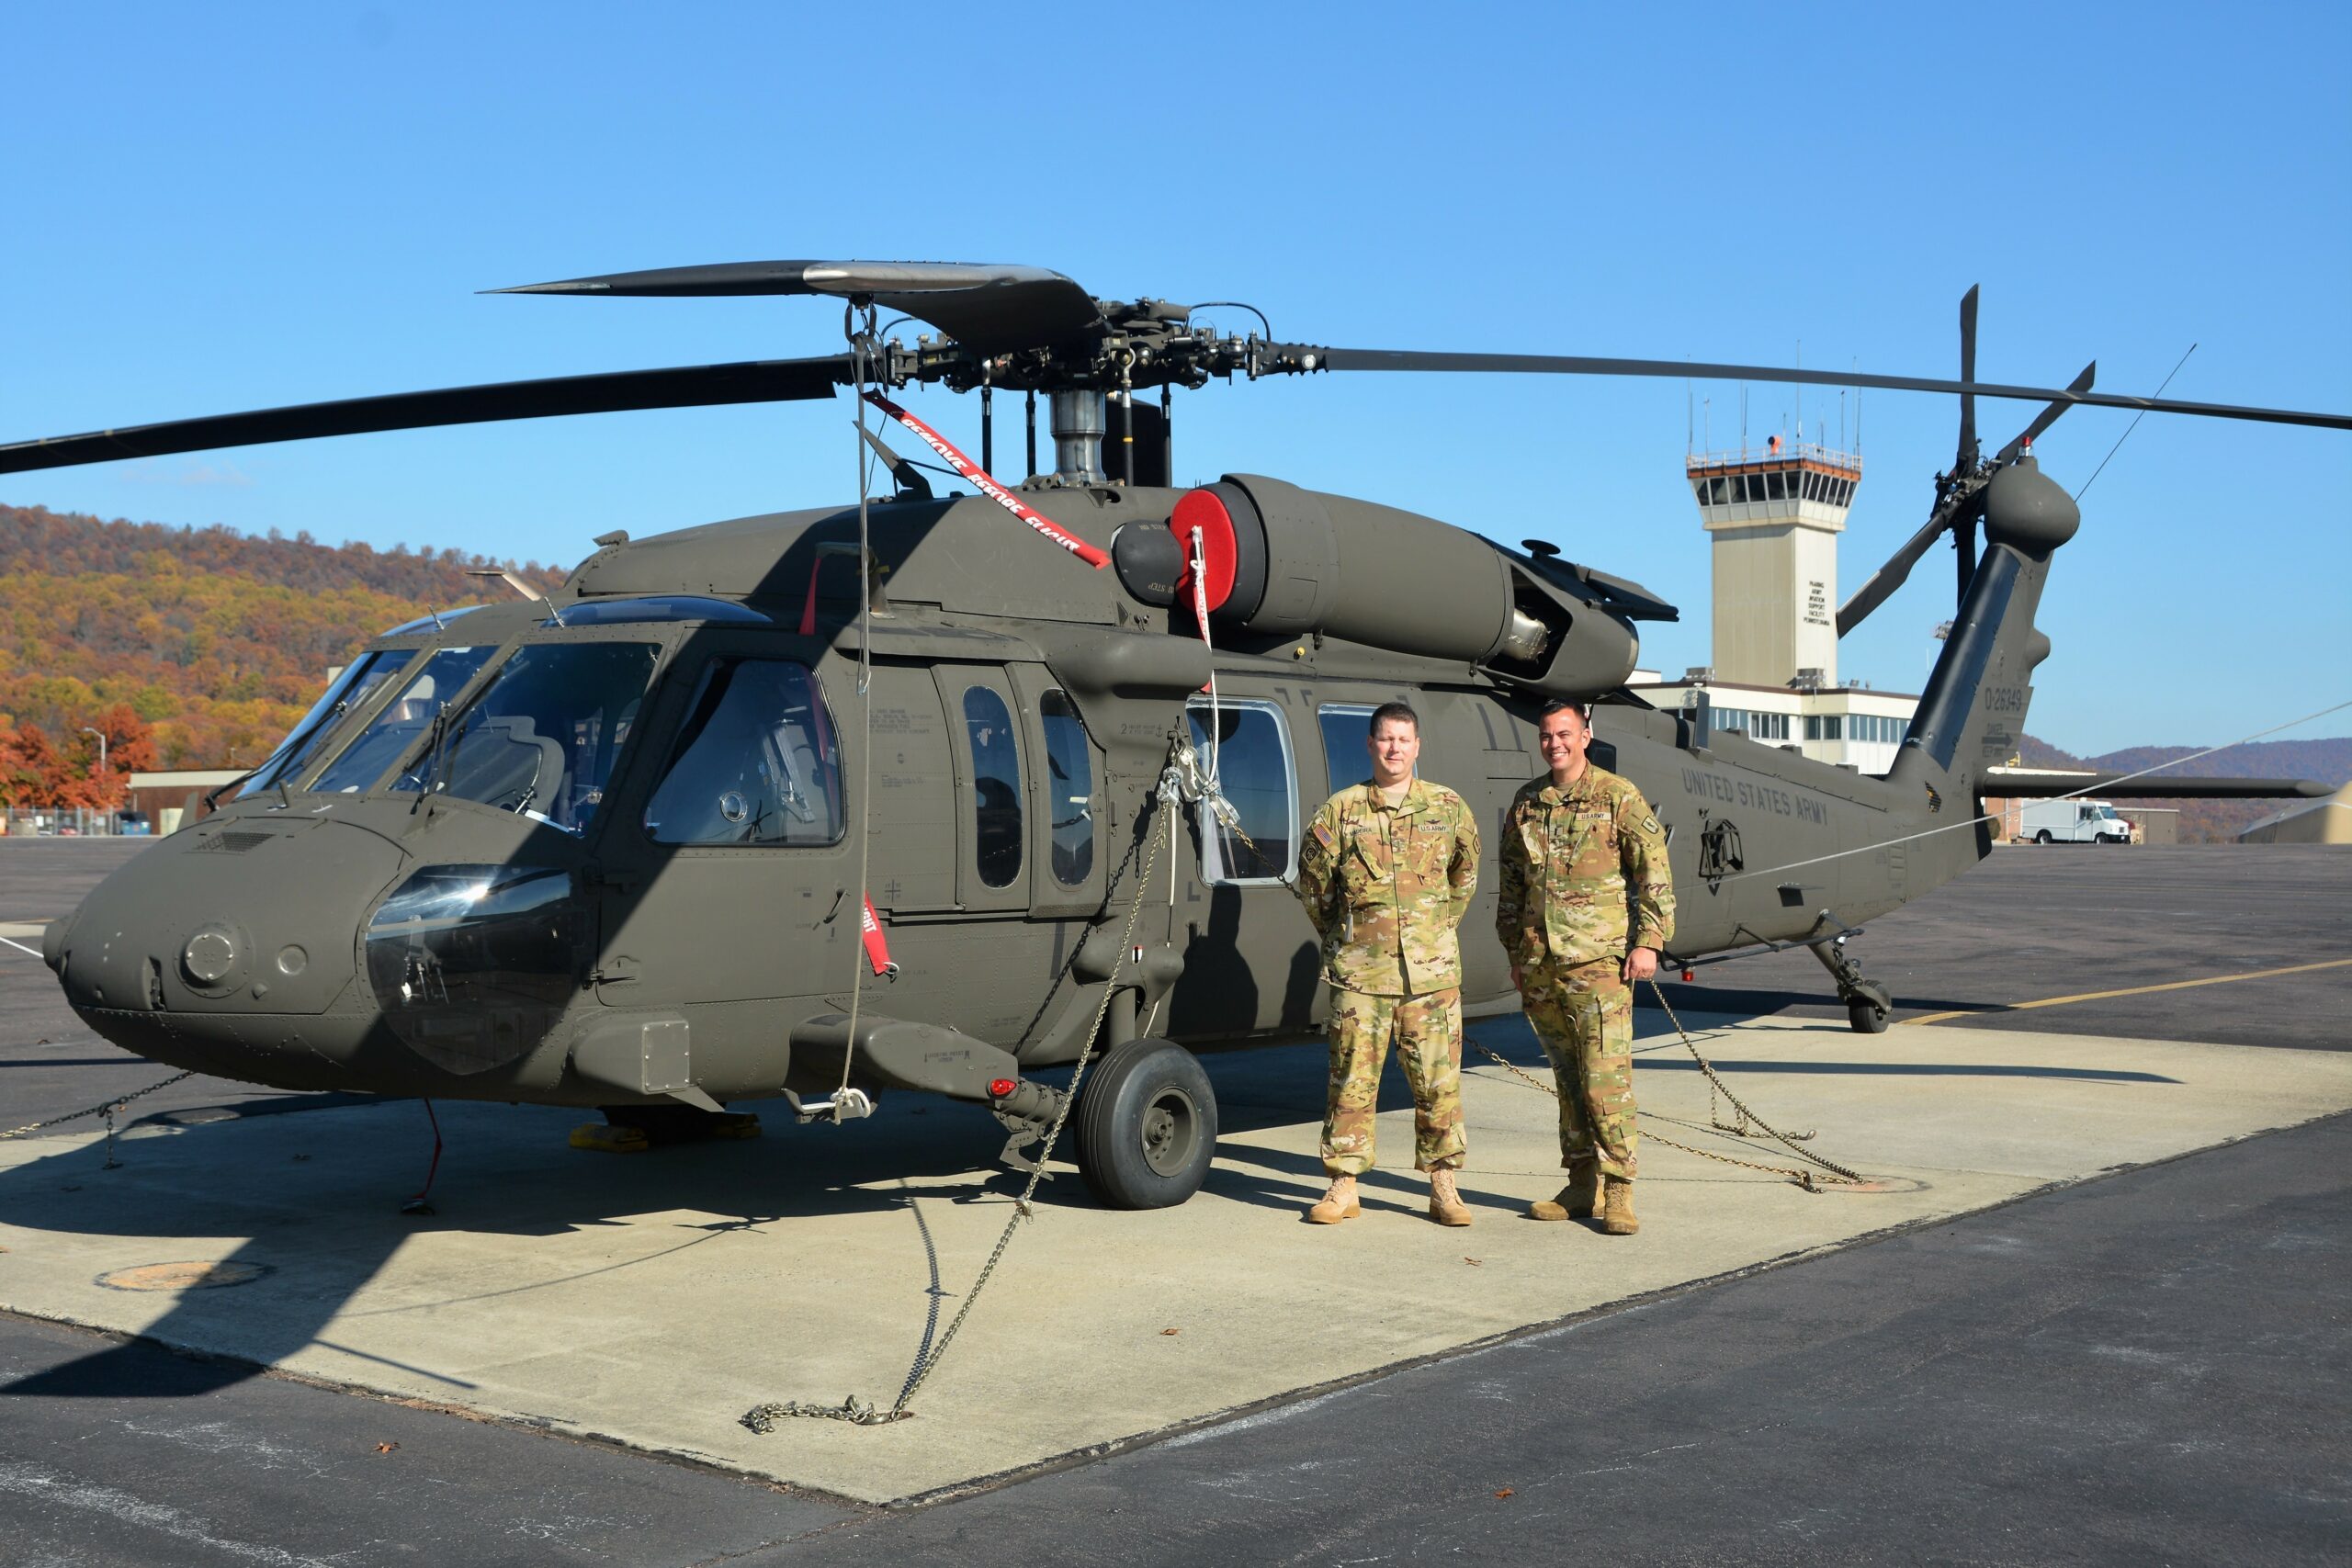 UH-60V Black Hawk helicopter